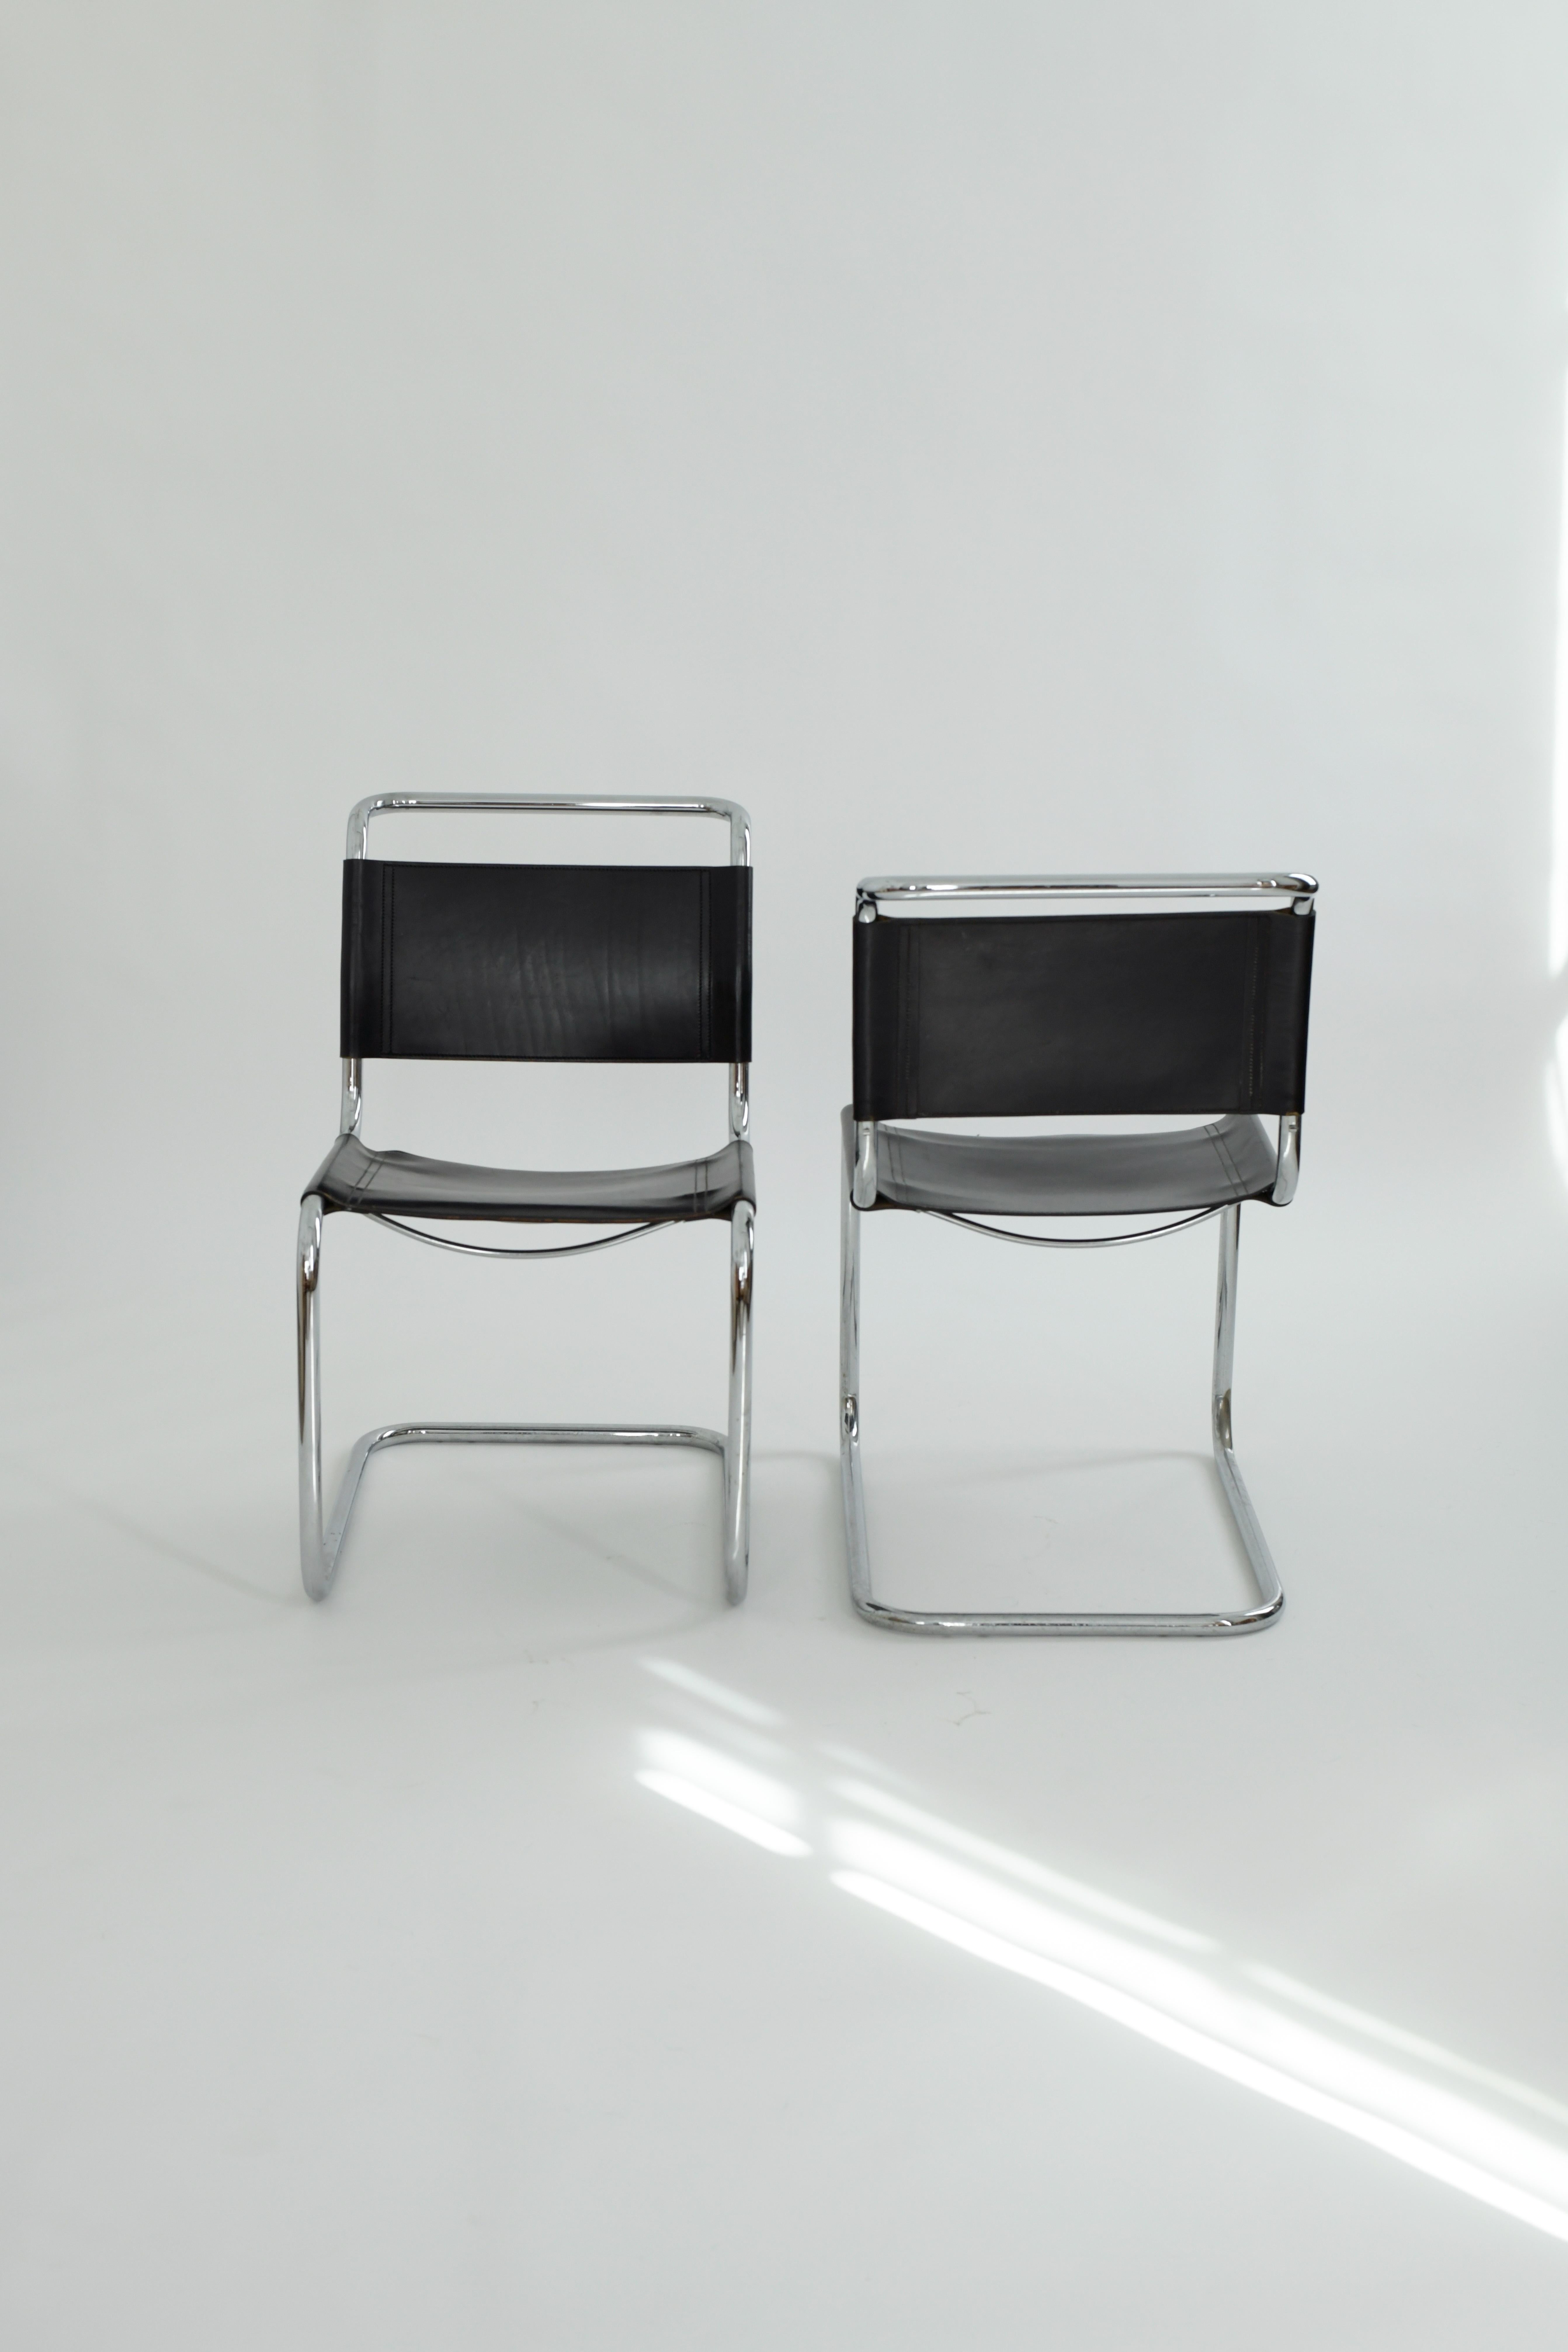 Paire de chaises de salle à manger S33 des années 1970 par Mart Stam pour Fasem, Italie. Ces chaises emblématiques du Bauhaus sont dotées de magnifiques sièges et dossiers en cuir patiné et sont incroyablement confortables grâce à leur conception en